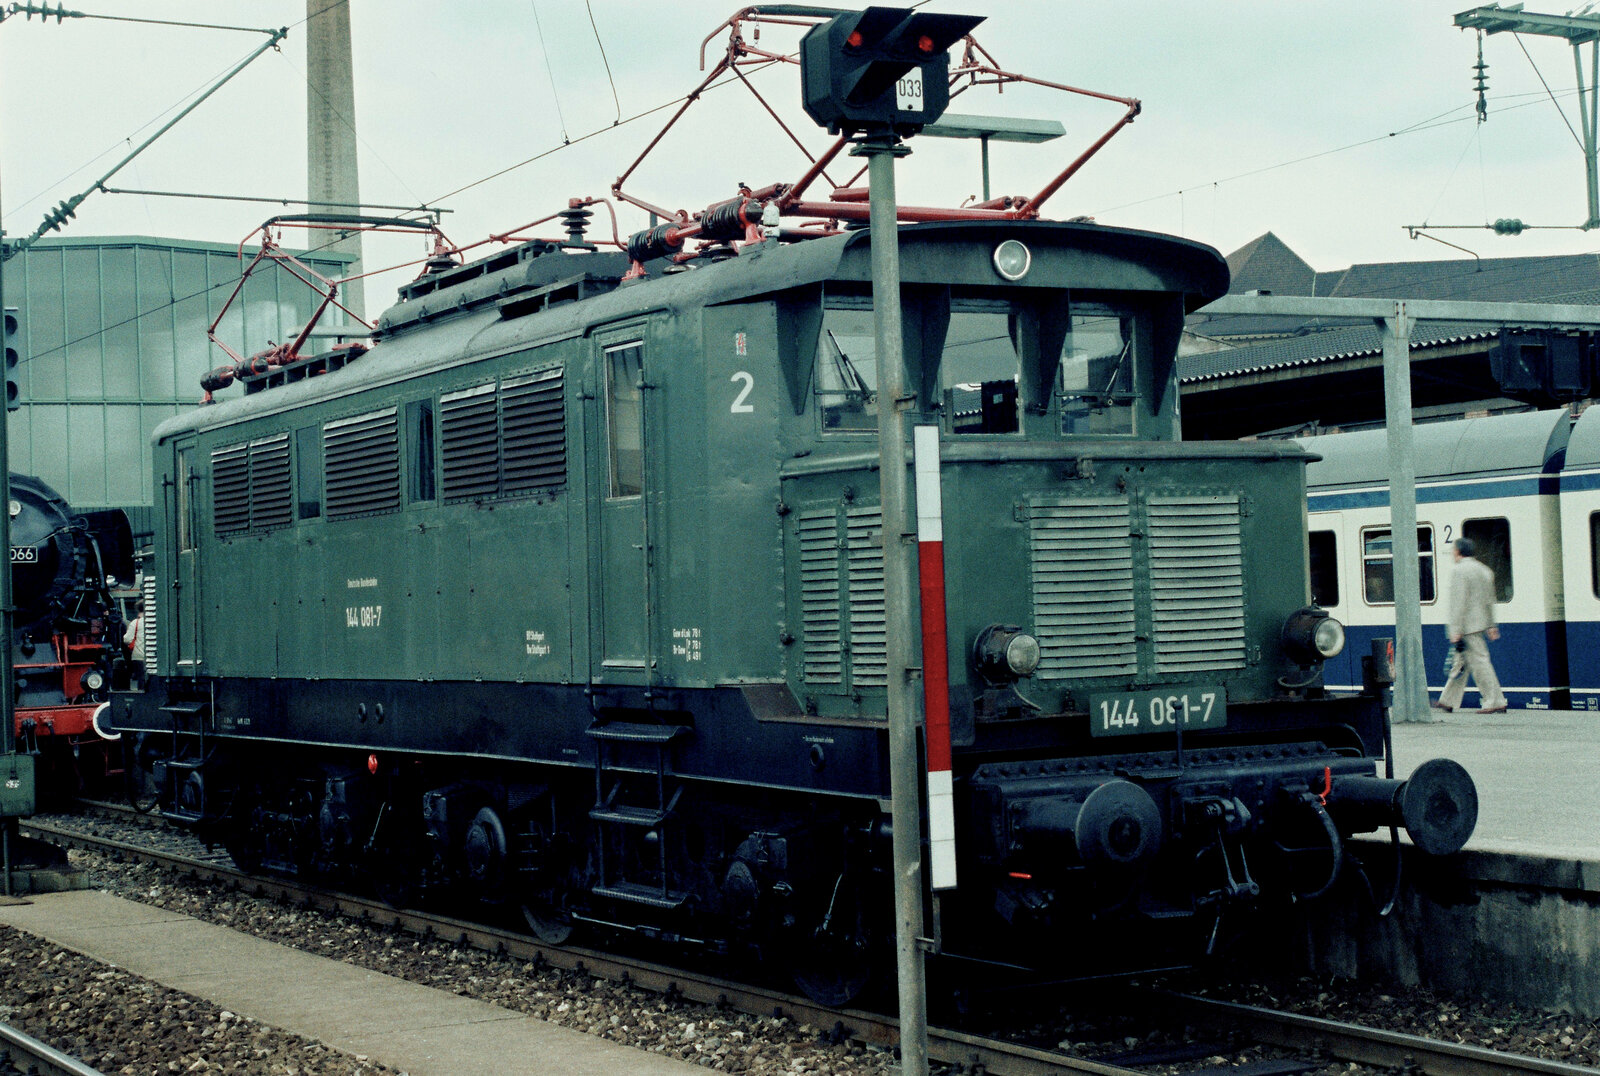 Feier des BDEF im Hauptbahnhof von Stuttgart, Ellok der DB-Baureihe 144.
Datum: 31.05.1984 